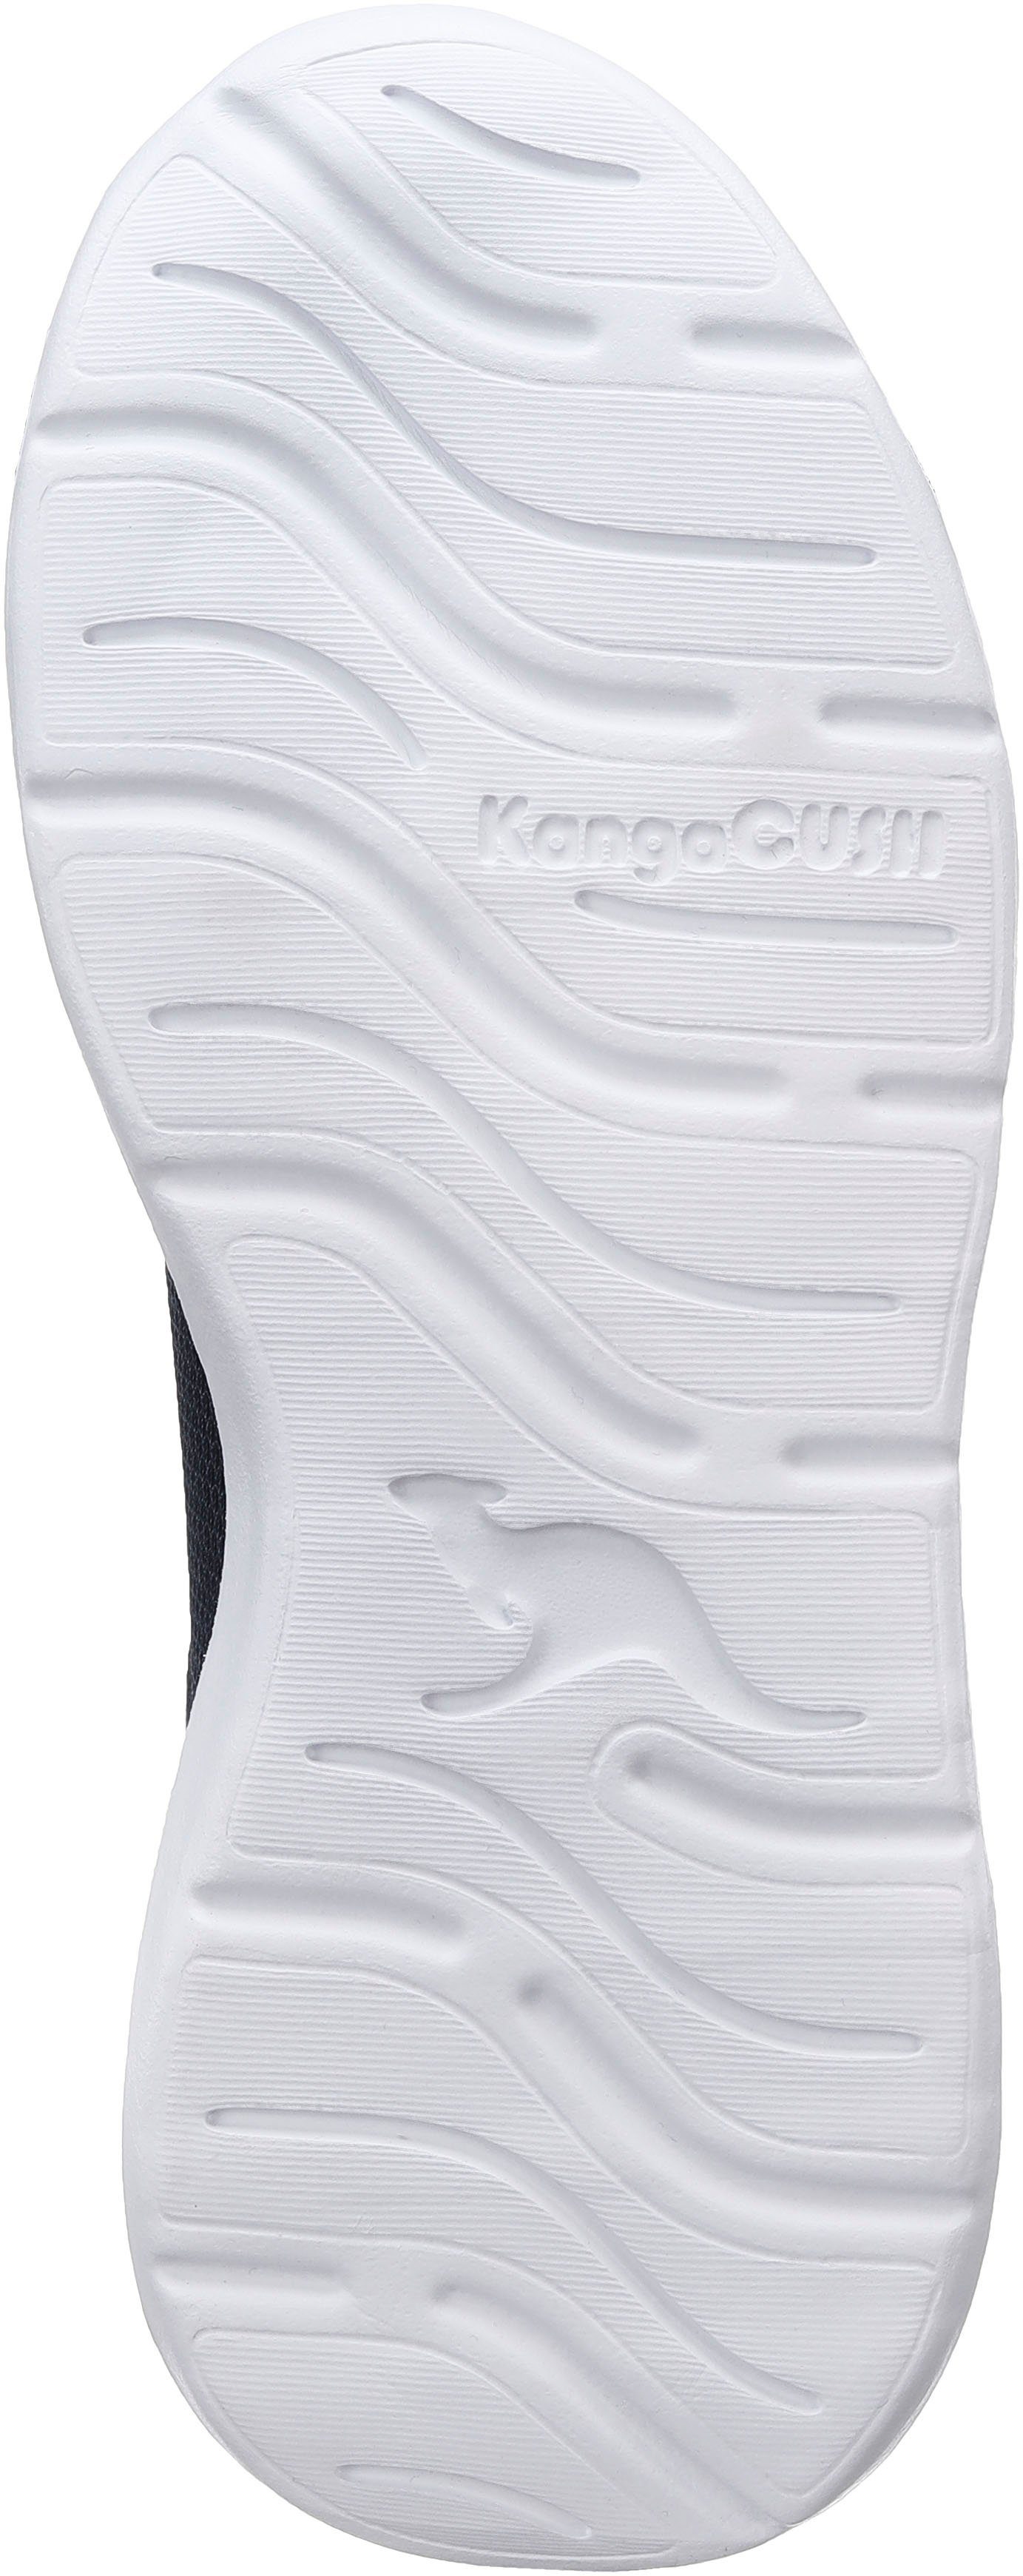 KangaROOS KL-Rise EV Sneaker Klettverschluss und elastischen mit navy-lime Schnürsenkeln